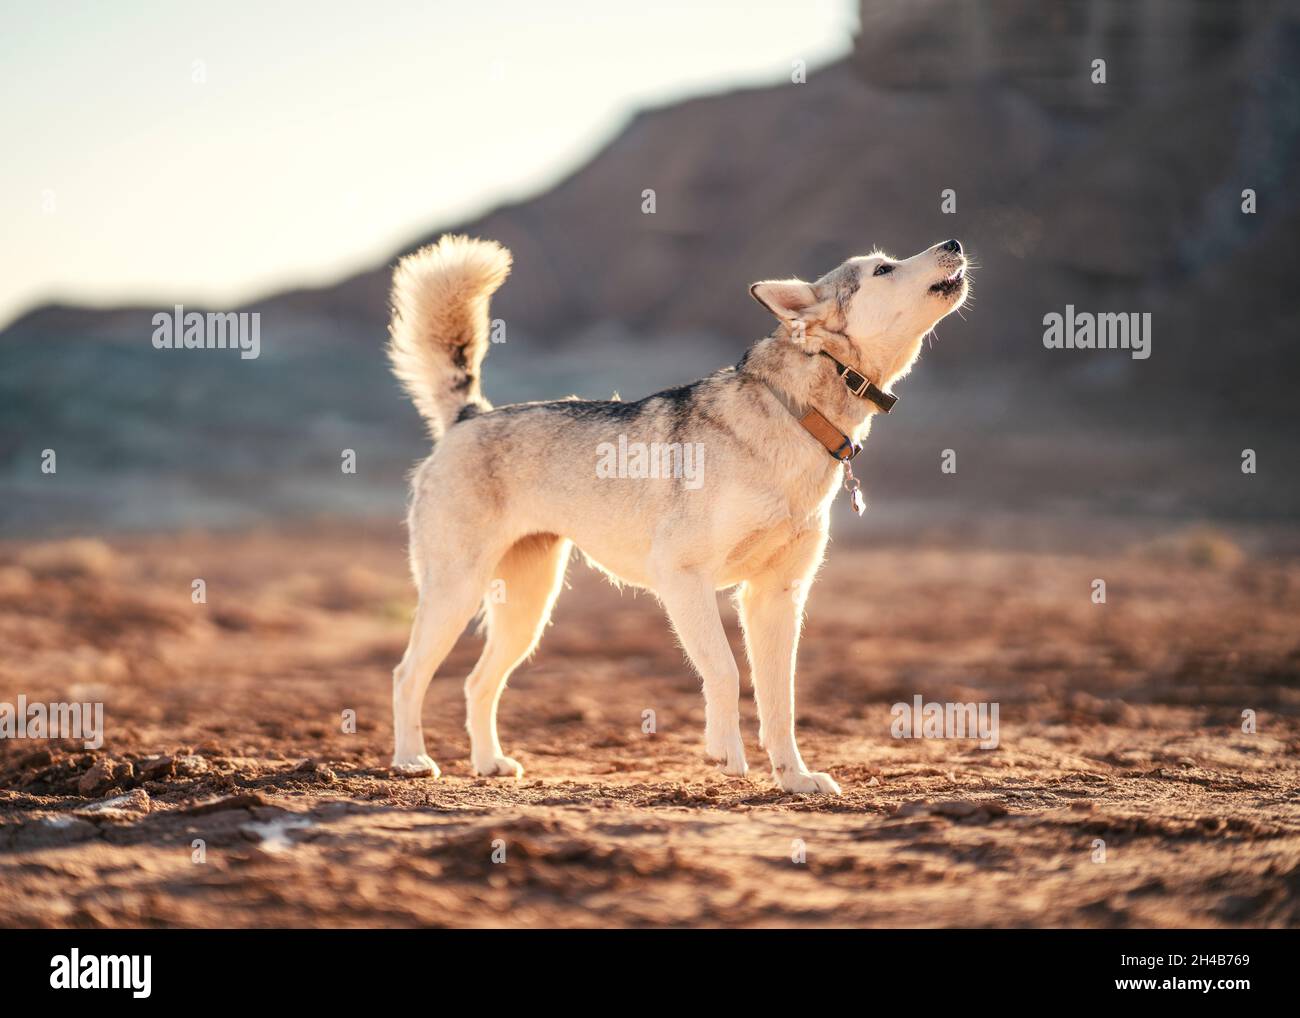 Husky howling at sunrise in the desert Stock Photo